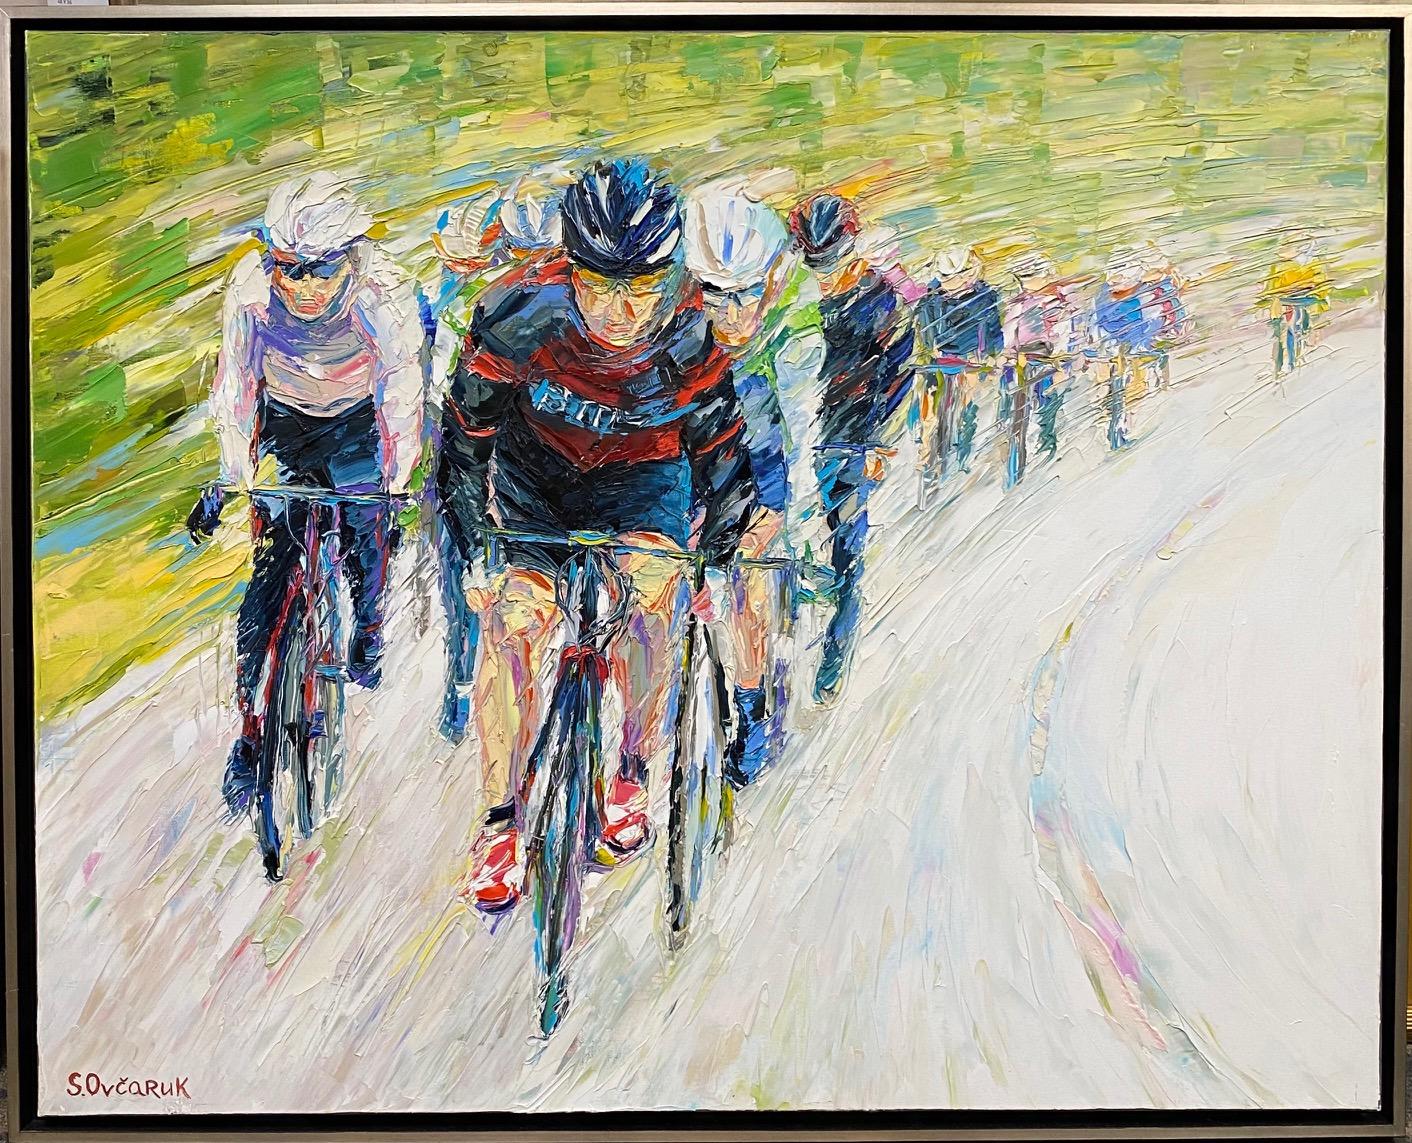 Tour de France, original 31x40 expressionist figurative landscape